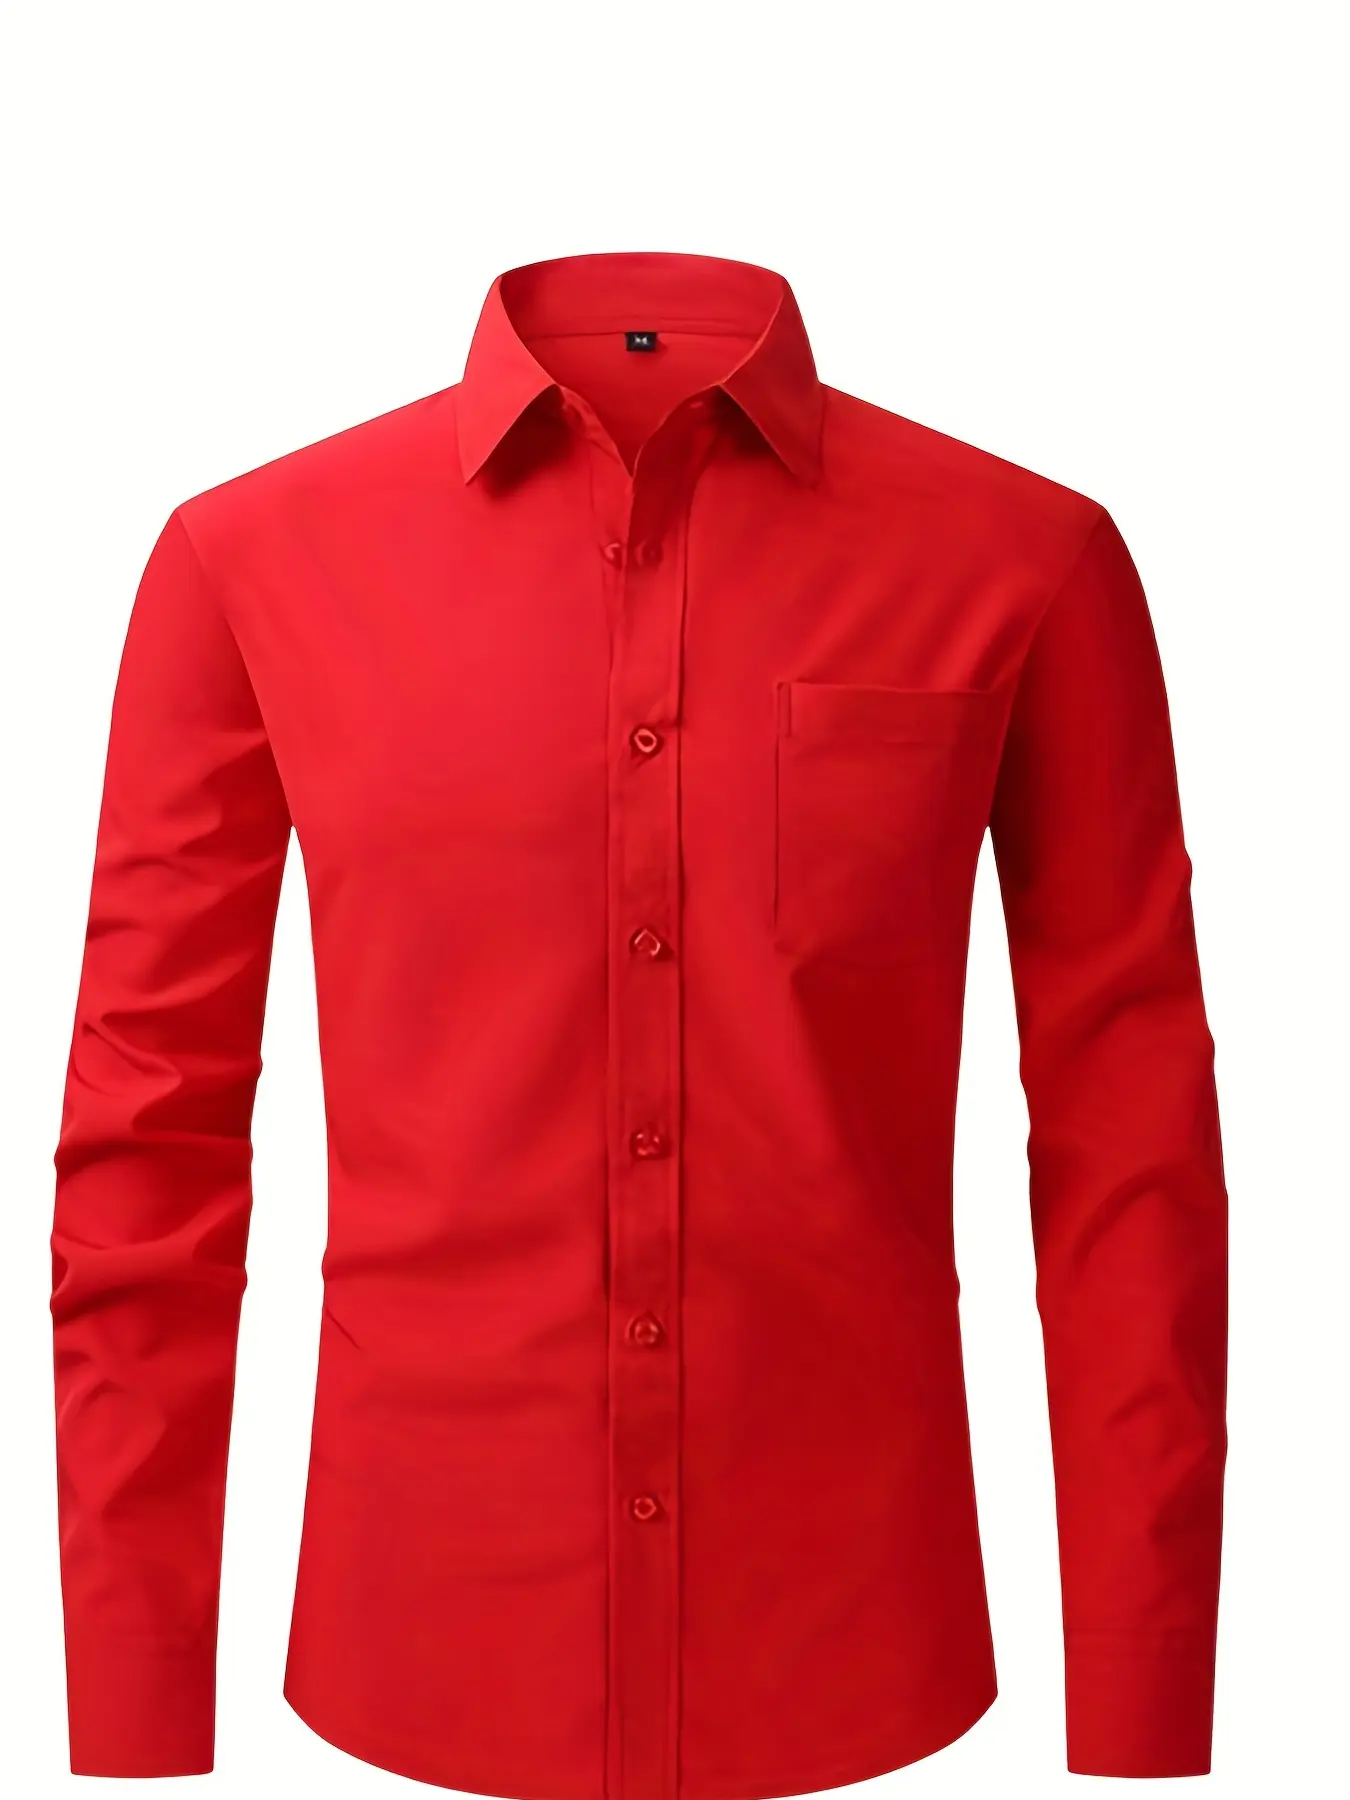 camisa roja - Cómo se escribe camisa roja